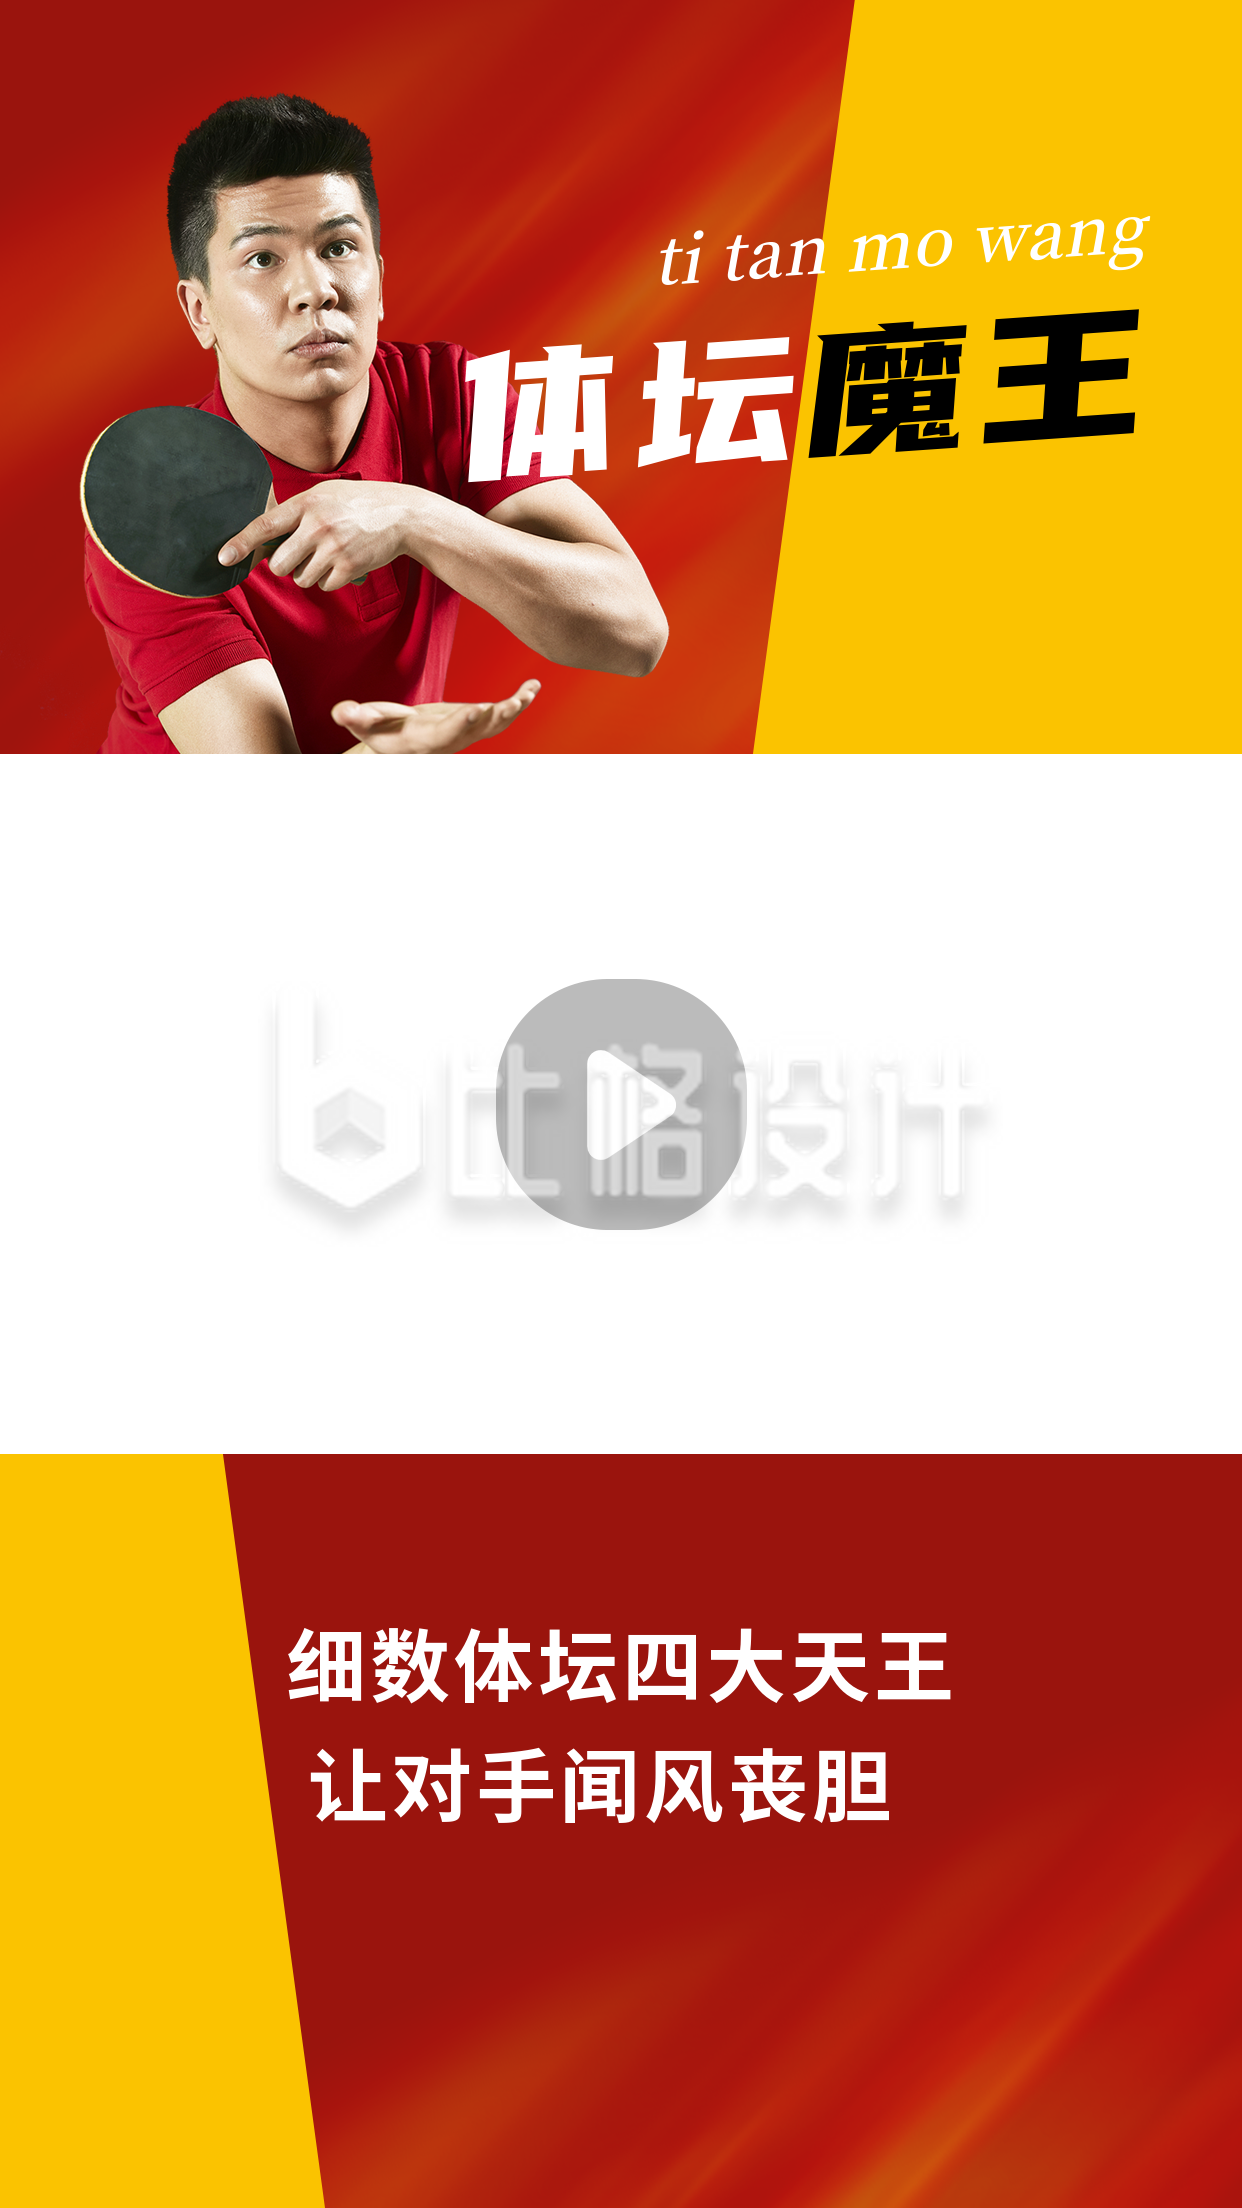 体坛魔王运动健儿体育竞技简约红色视频边框